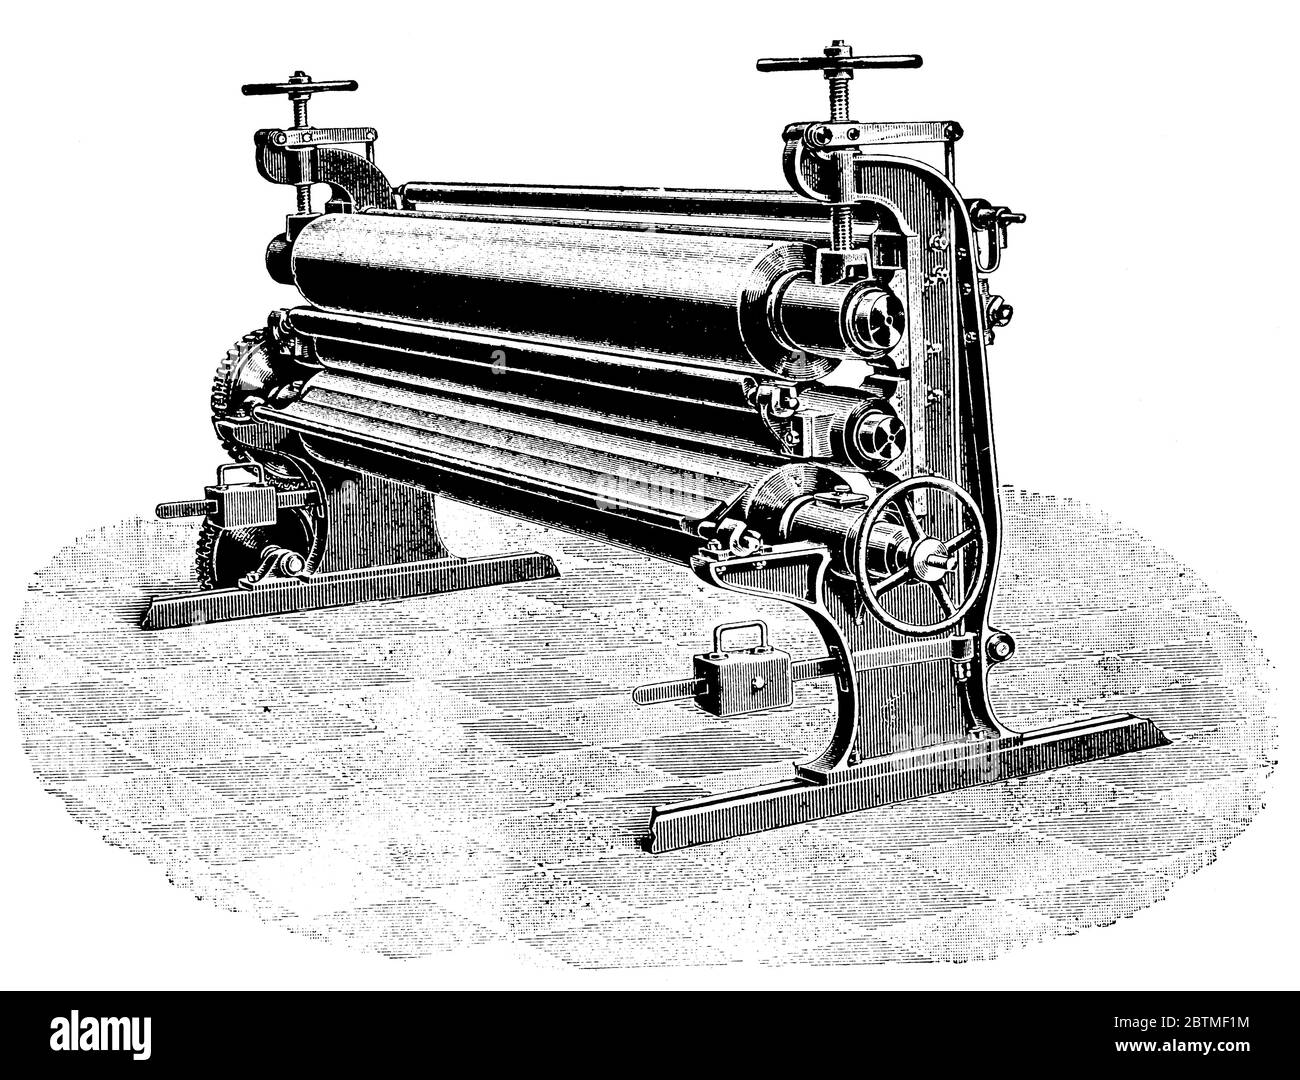 Ausrüstung für die Papierindustrie (Nass- und Trockenwalzen). Illustration des 19. Jahrhunderts. Weißer Hintergrund. Stockfoto